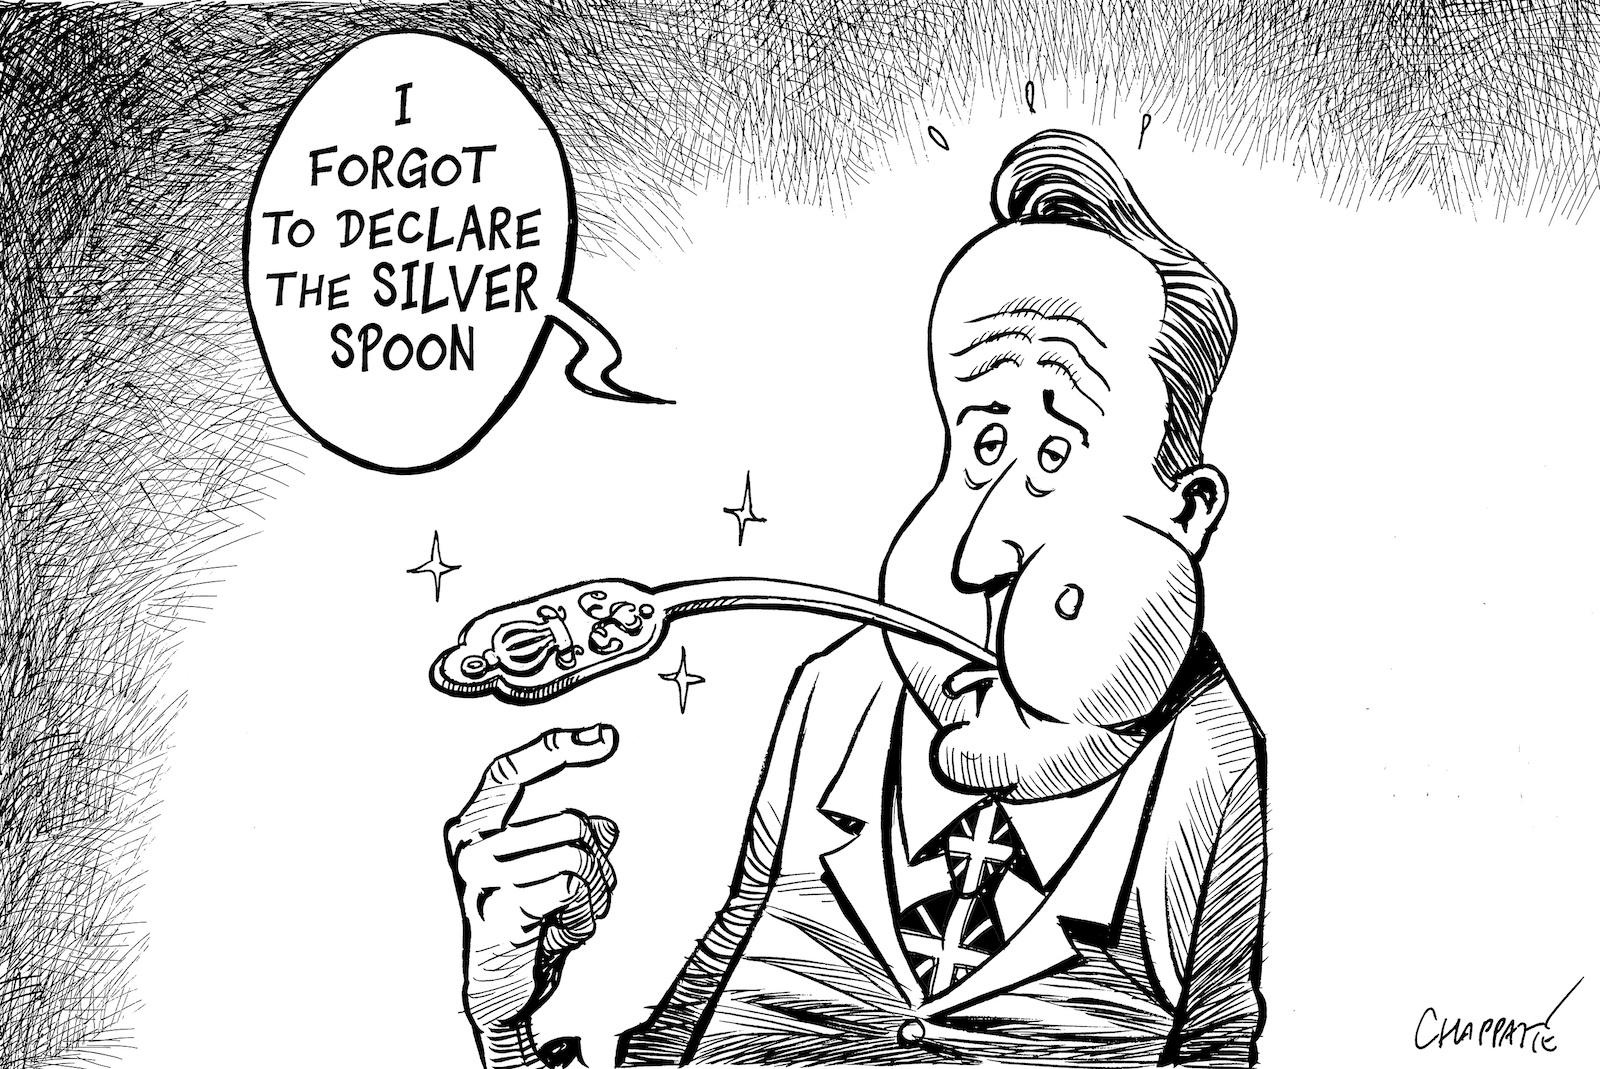 David Cameron's Tax Returns